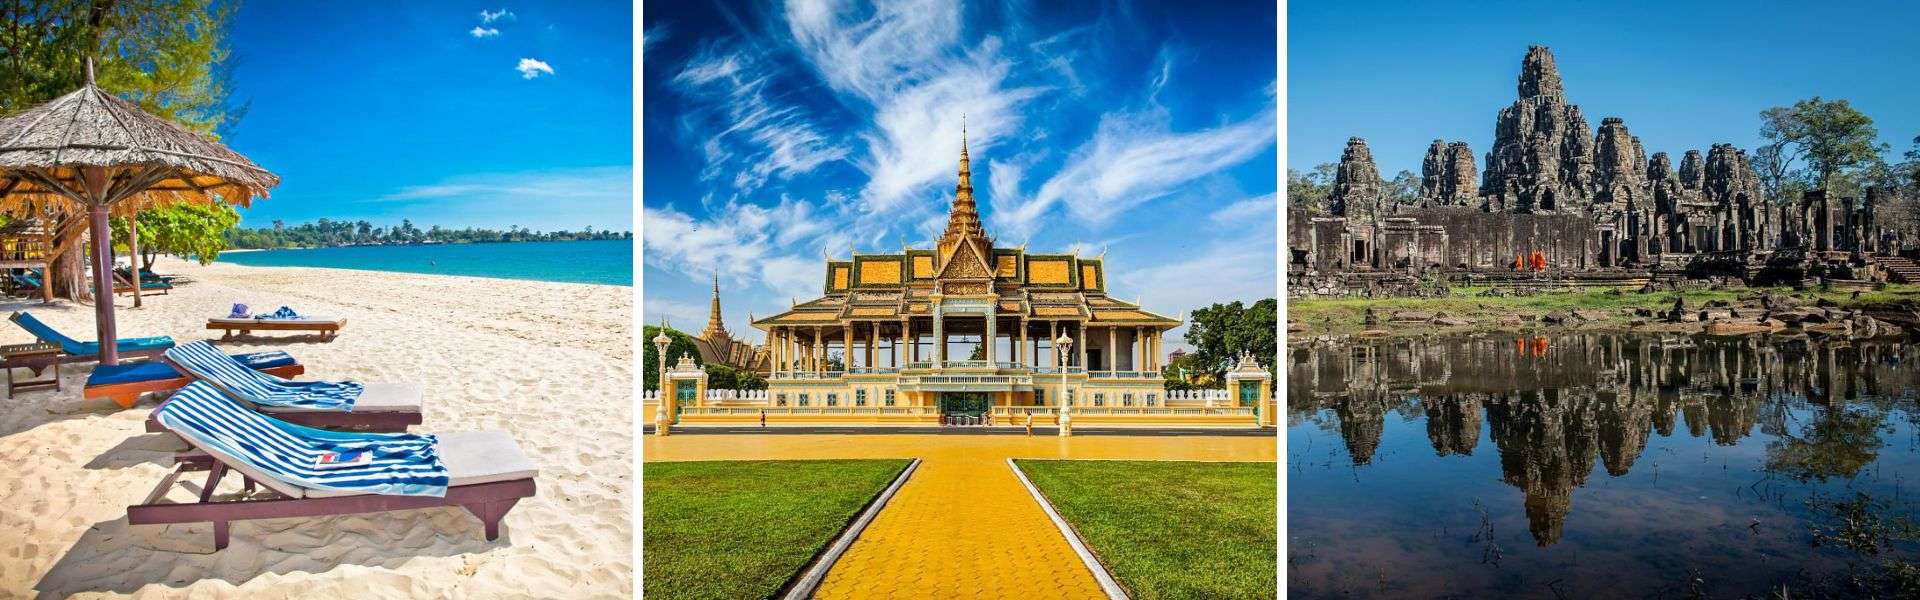 Il visto d'ingresso in Cambogia